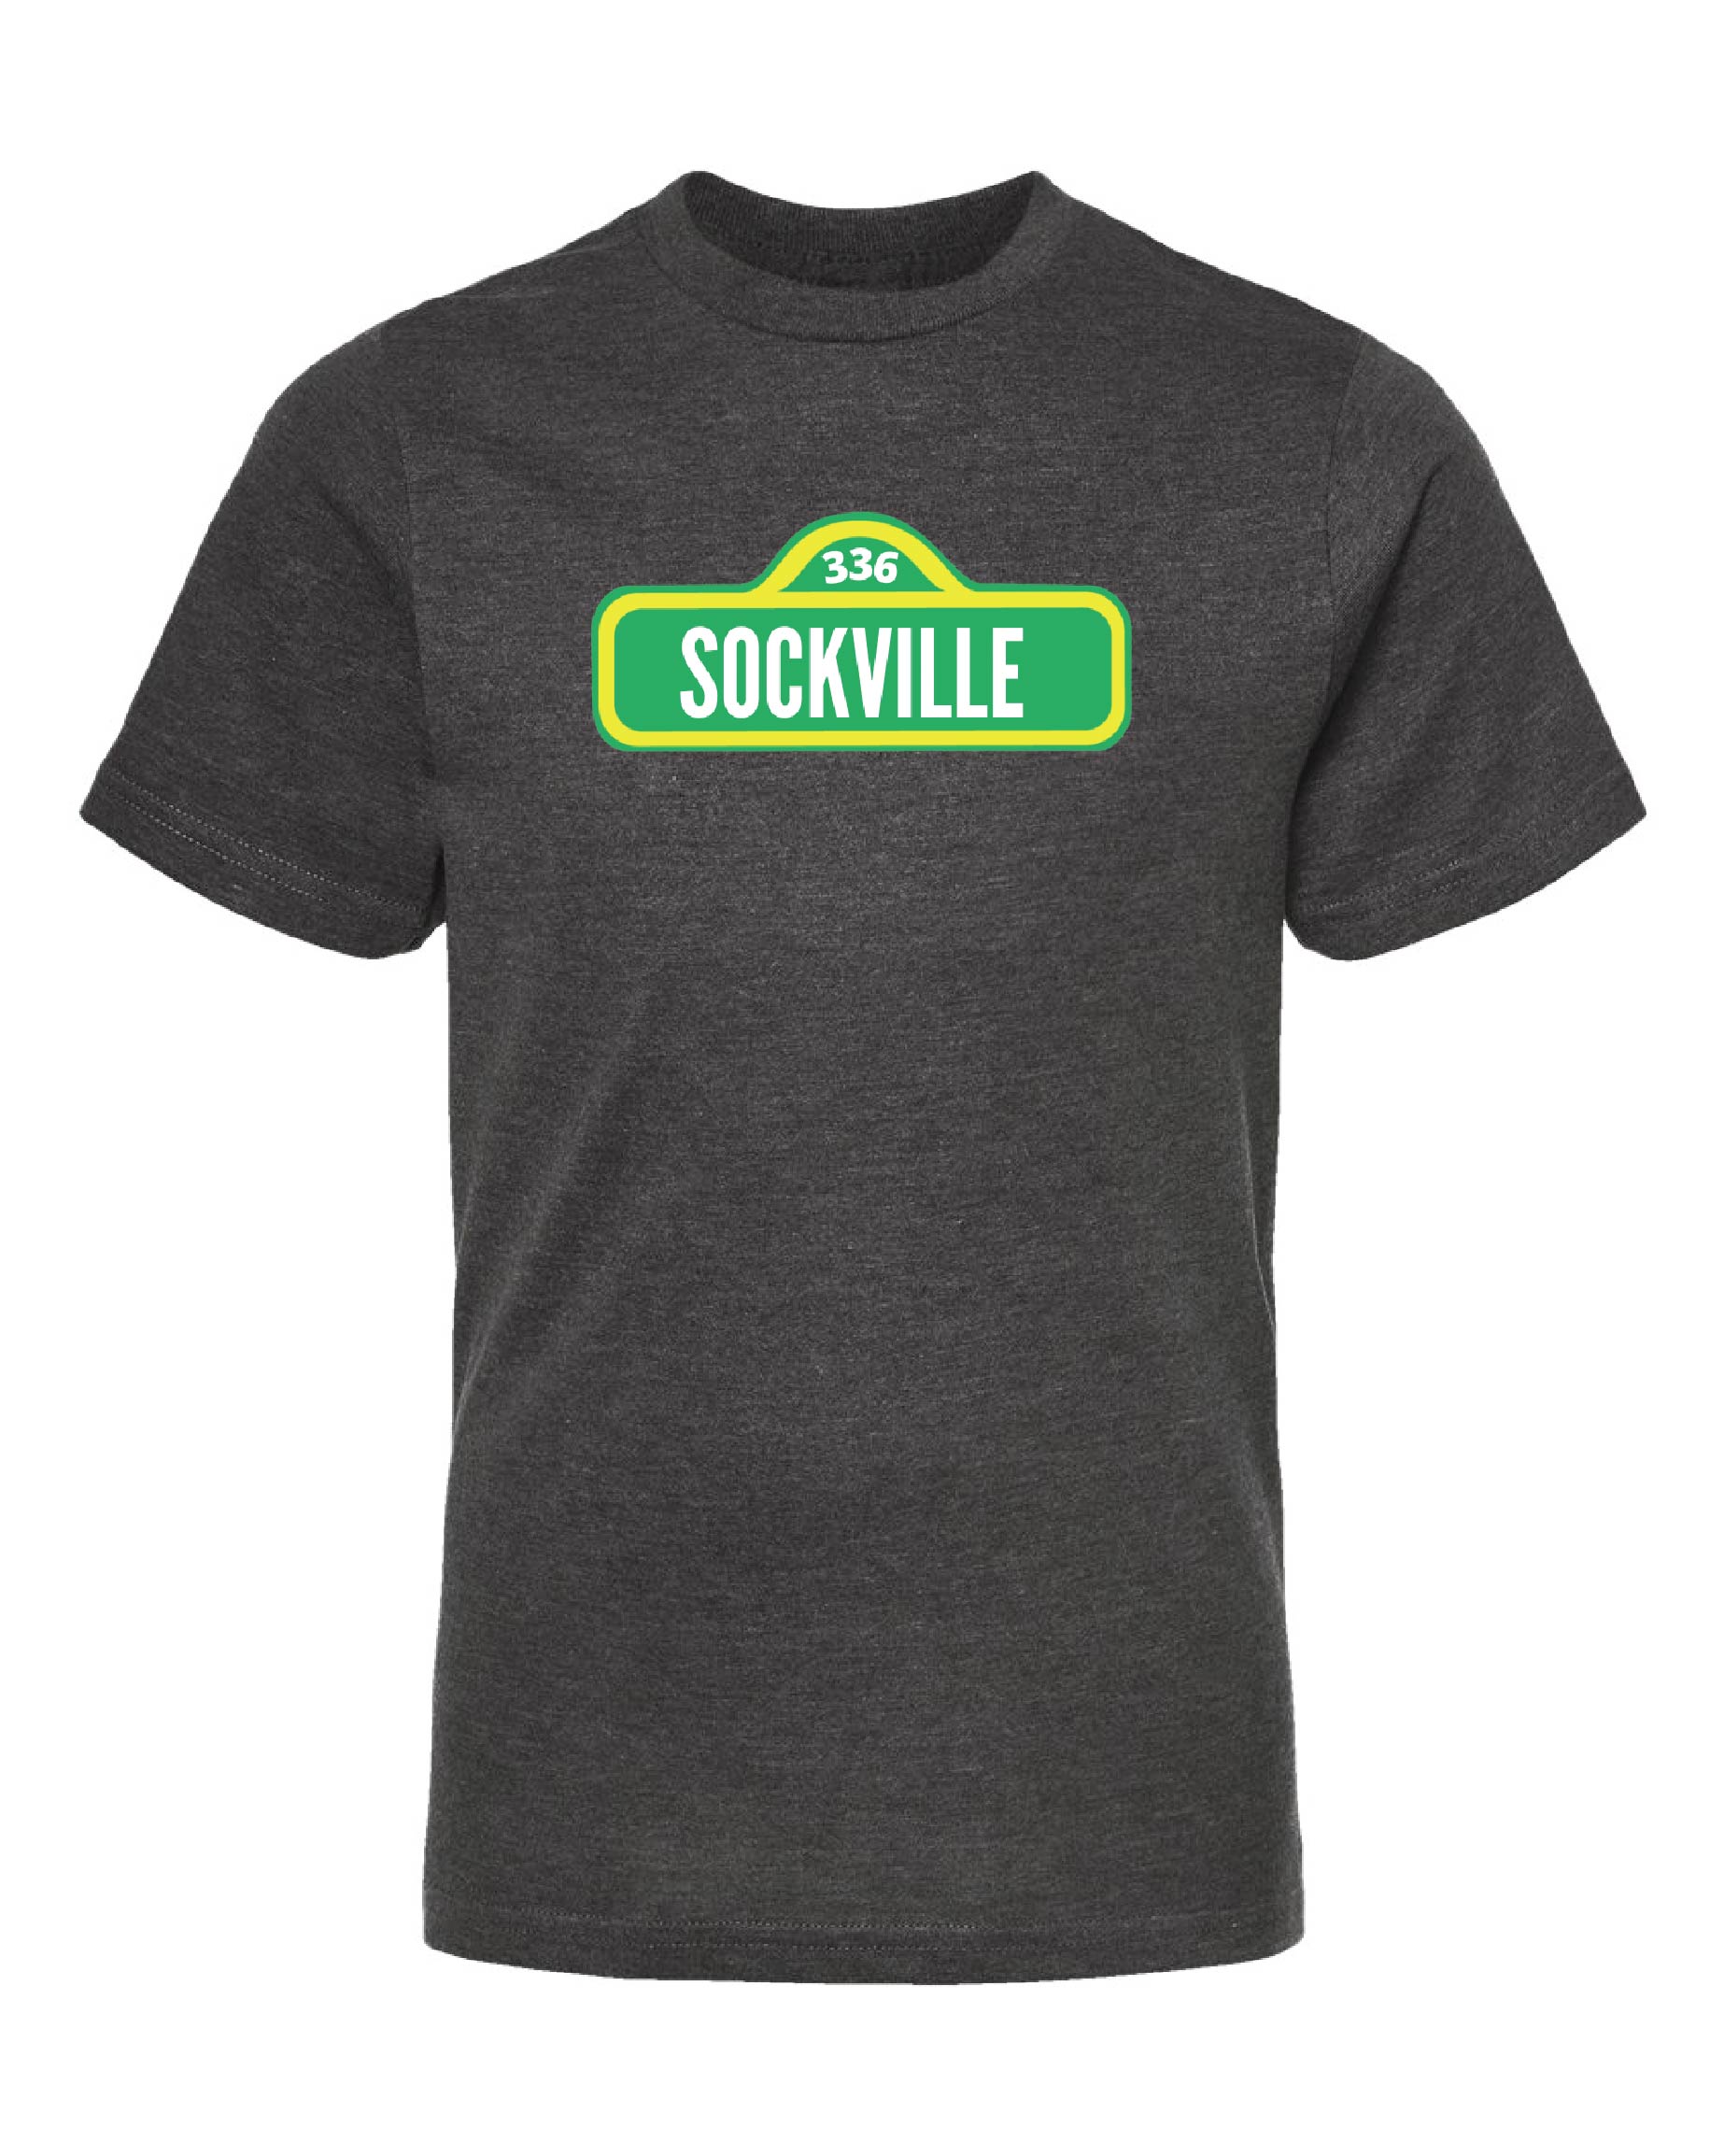 Sockville Youth T-Shirt-0